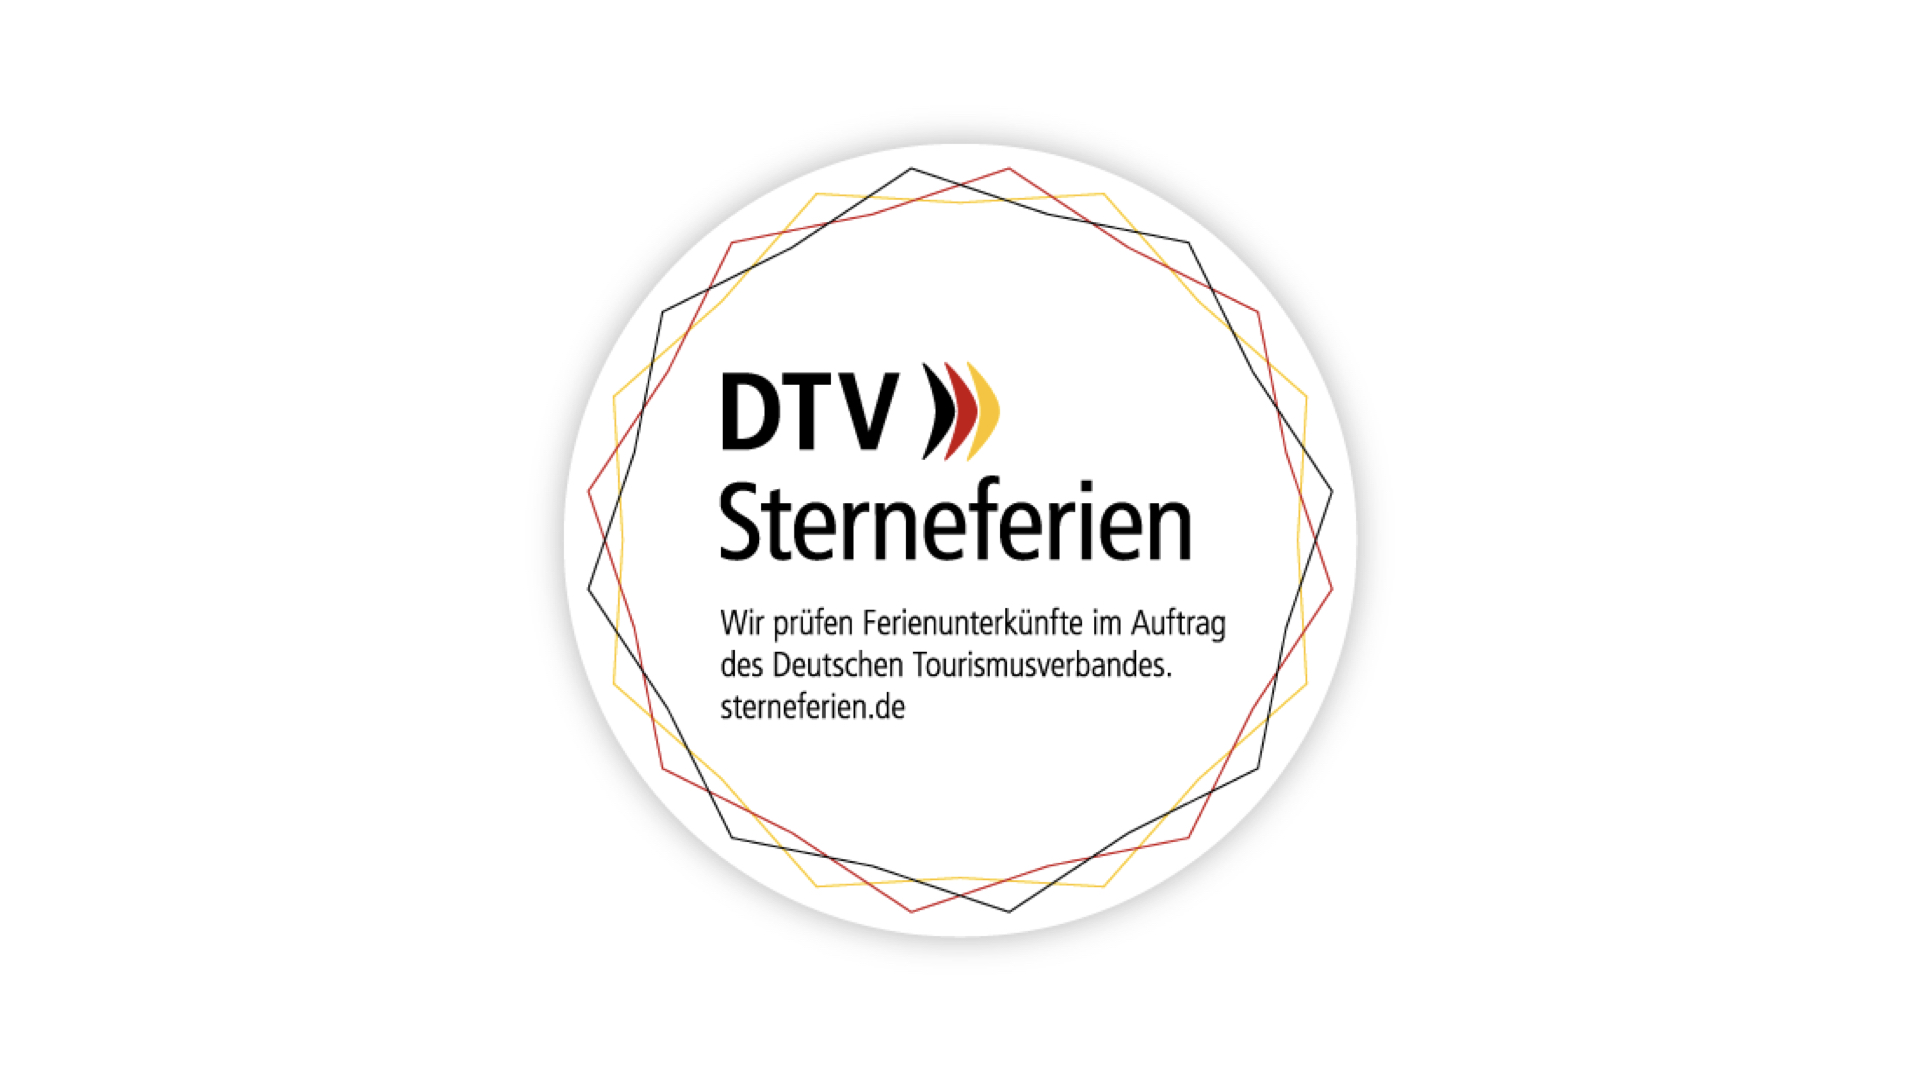 DTV Sterneferien © Deutscher Tourismusverband